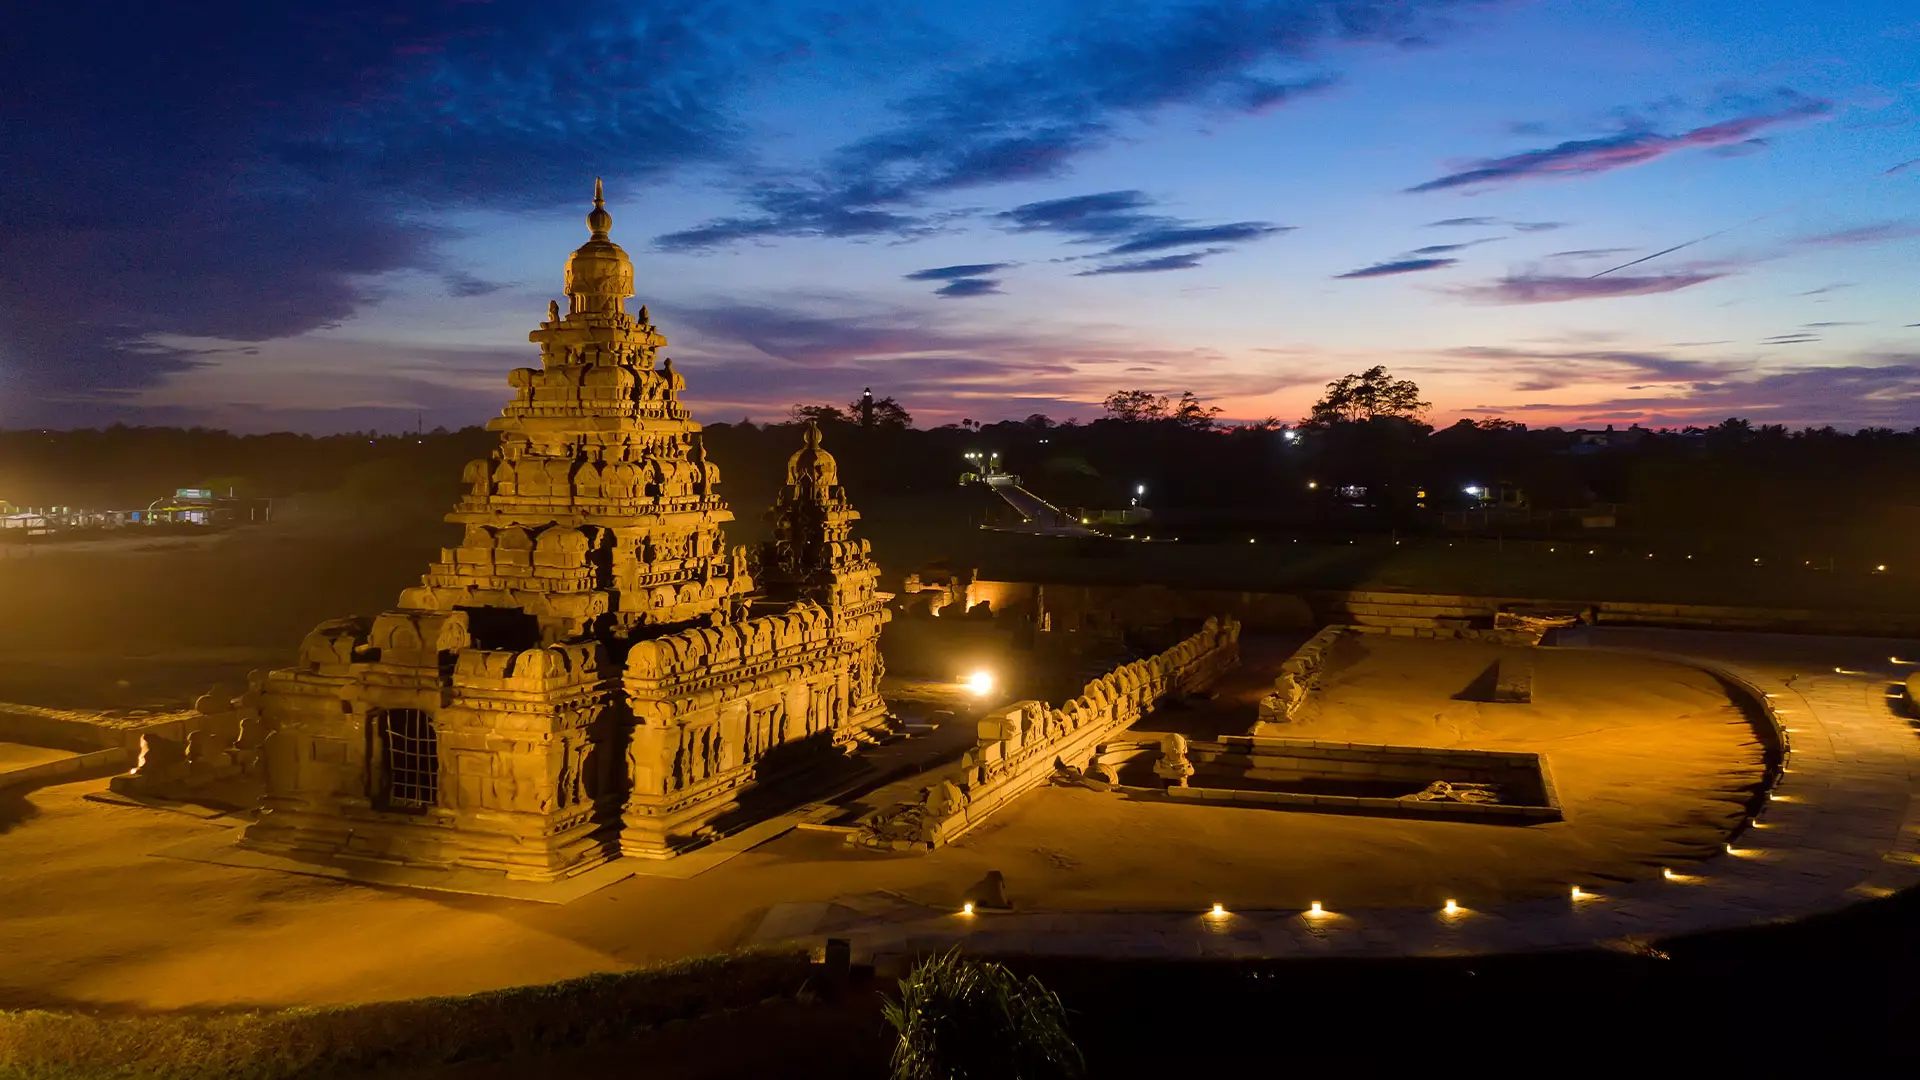 Mahabalipuram – Pondicherry – Chidambaram – Kanchipuram (from Chennai) Tour Package (4 Nights / 5 Days)